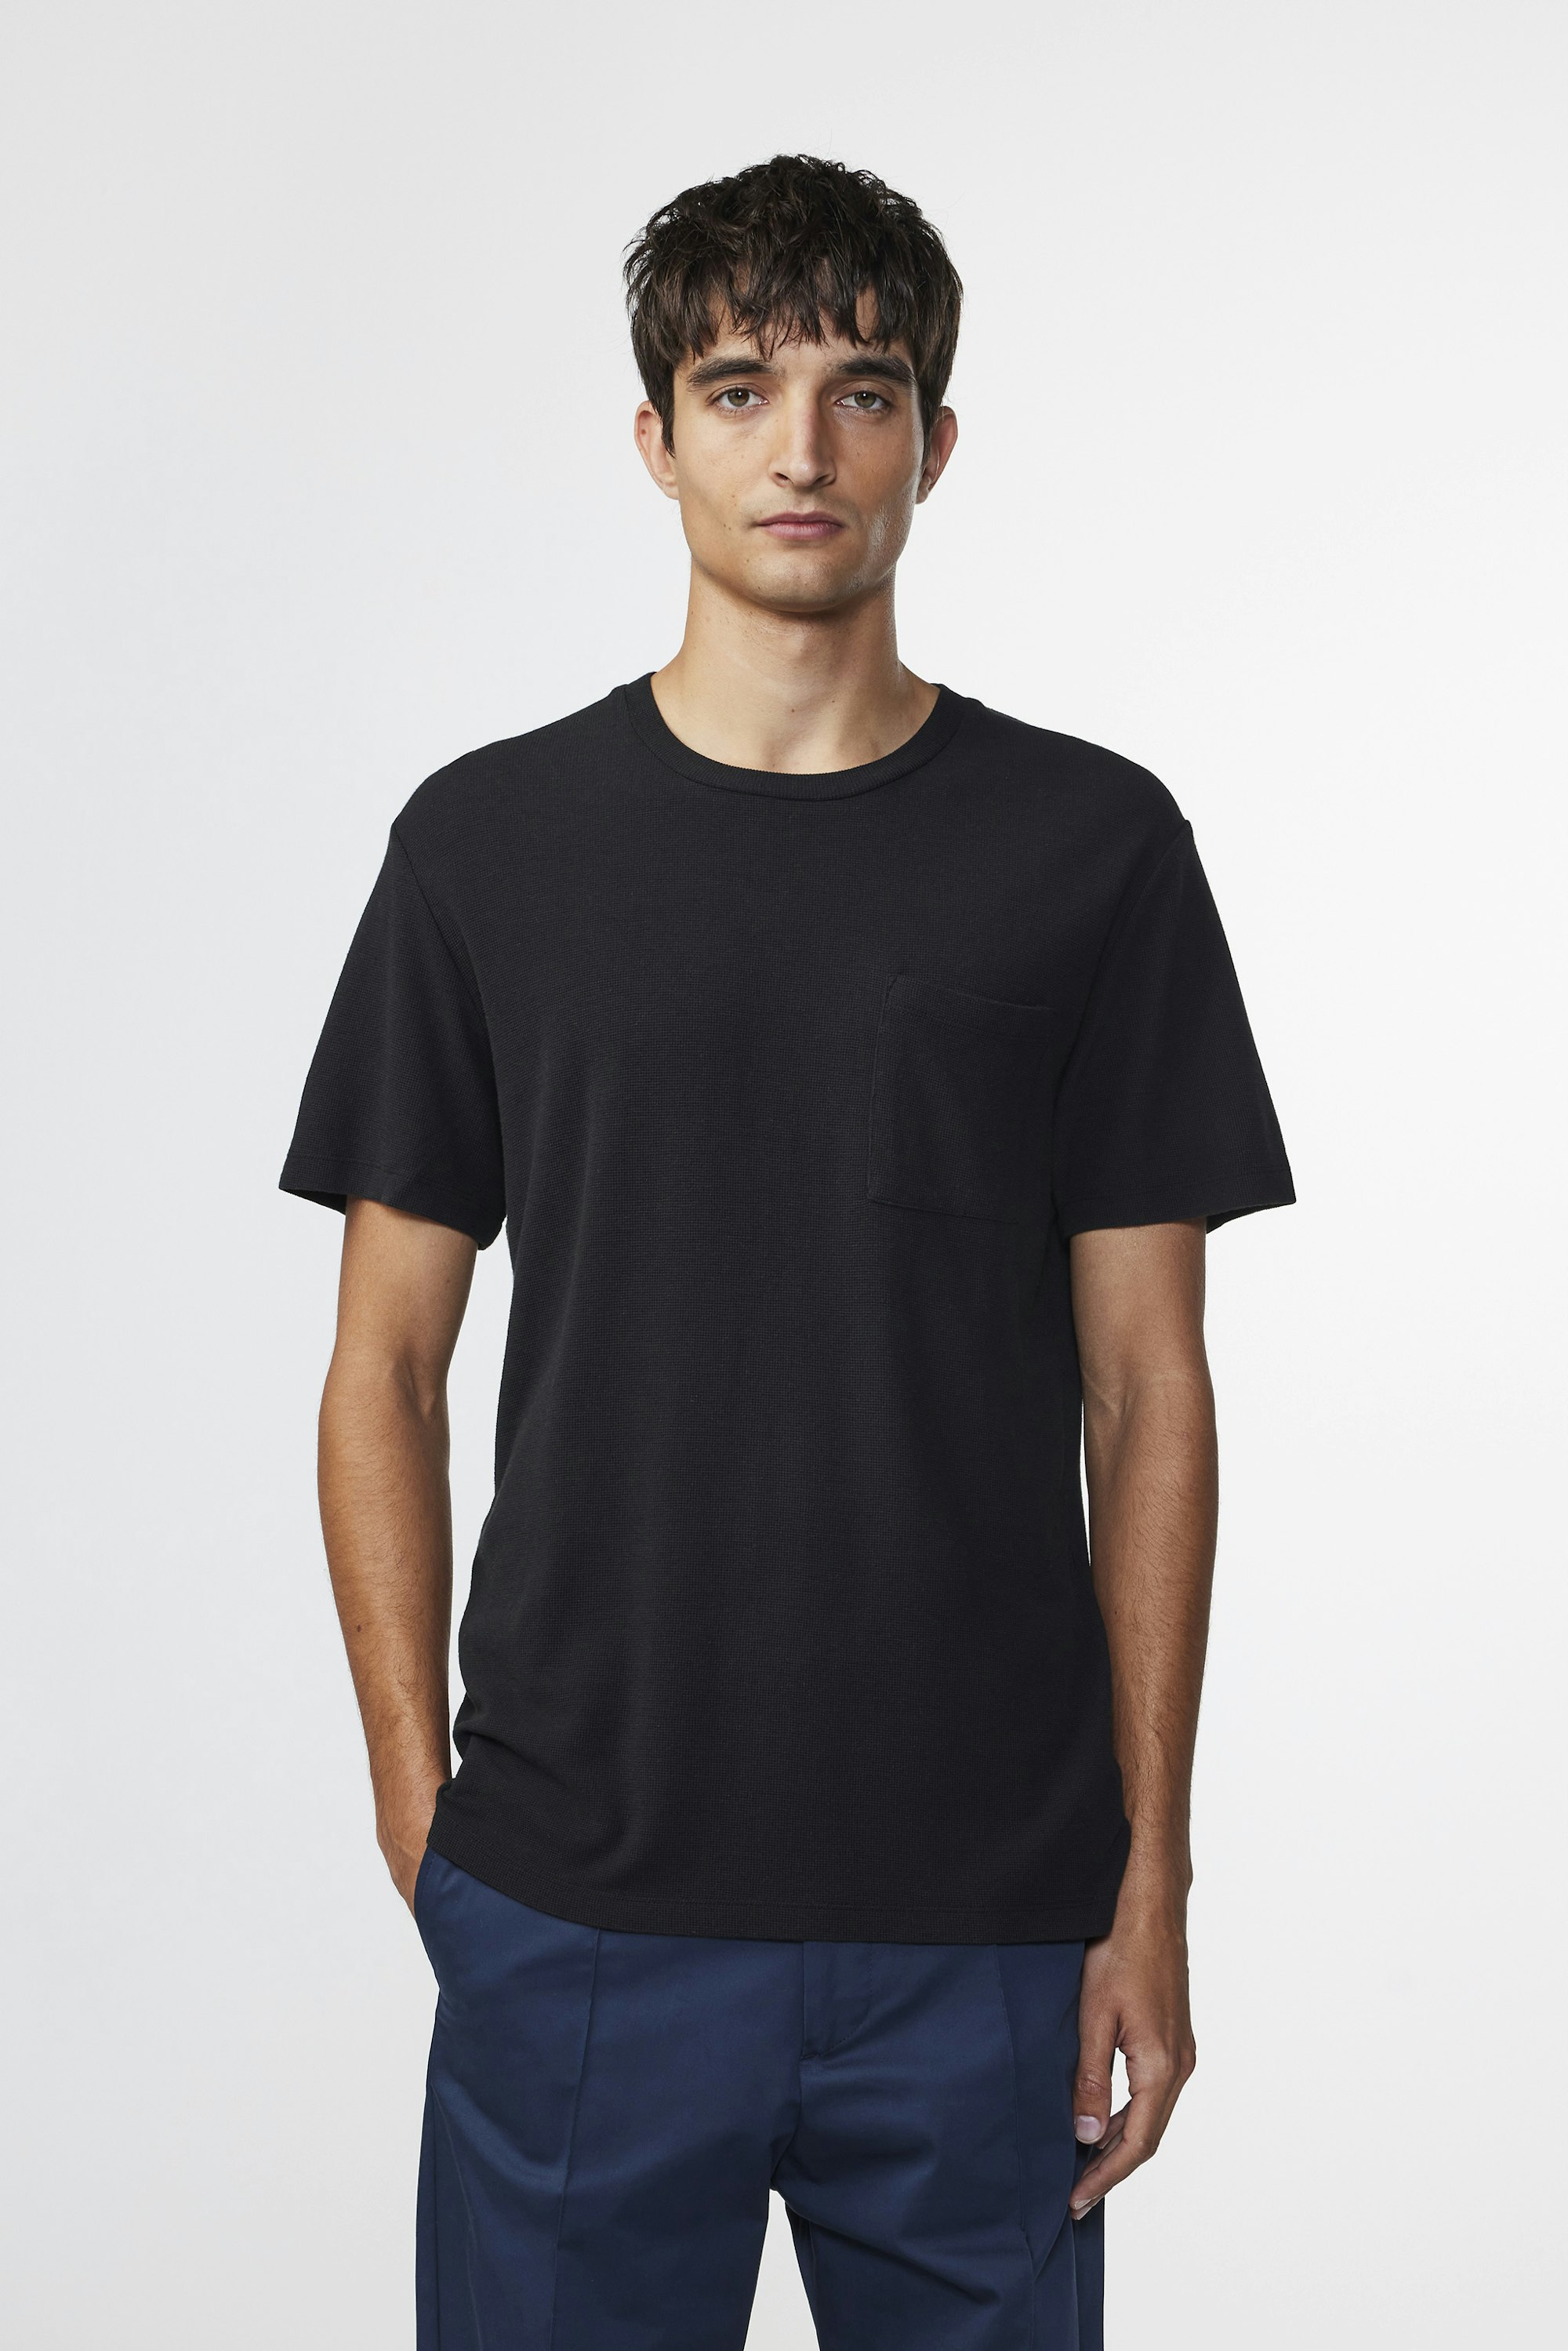 online at Black t-shirt Clive 3323 Buy - - men\'s